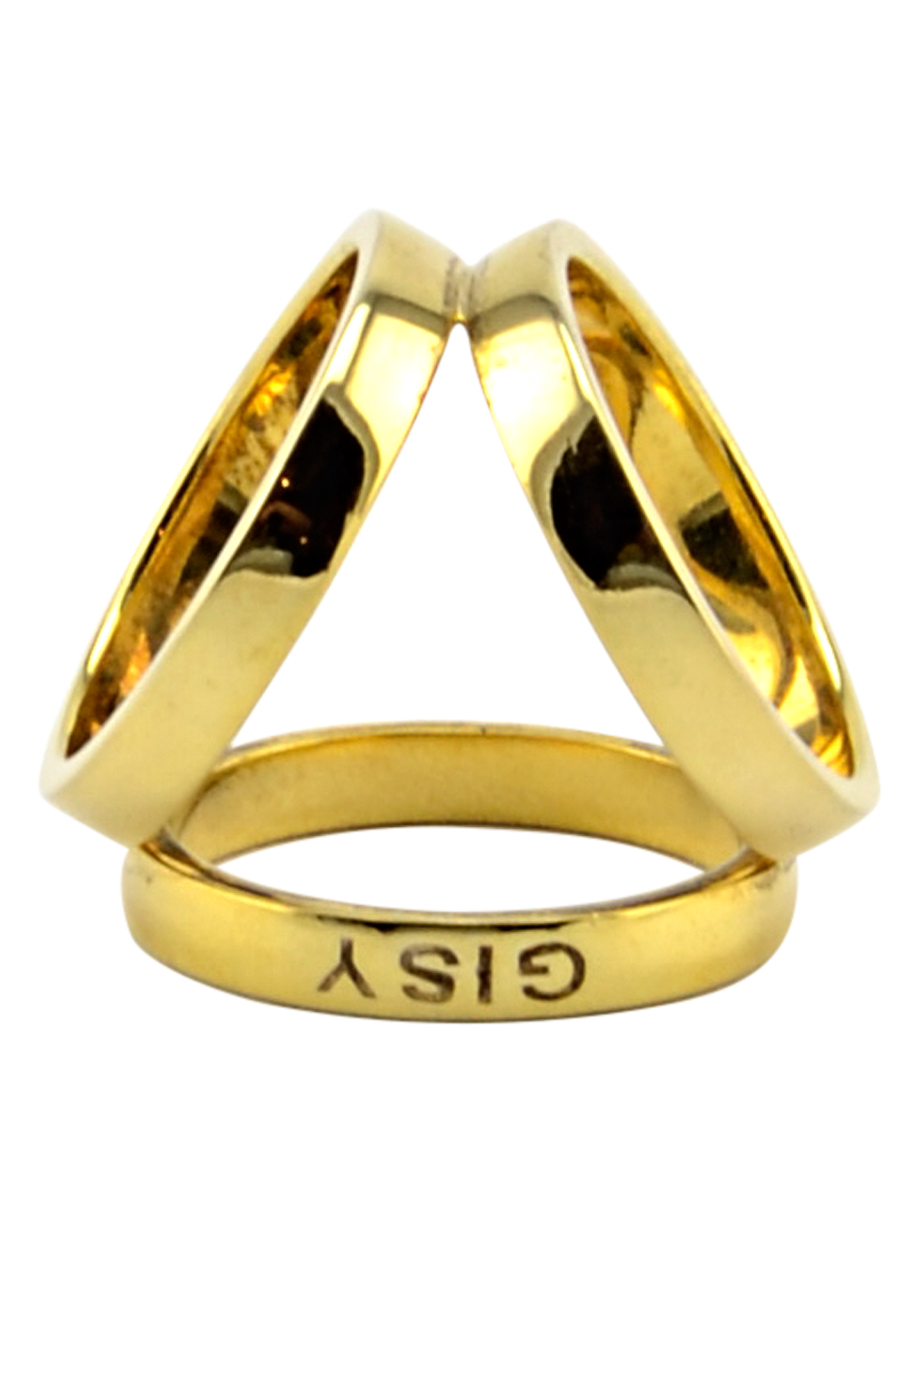 Trio Scarf Ring Silver 925 Gold plated (in 100% silk bag)- Nhẫn khăn ba chạc bạc 925 mạ vàng (đựng trong túi lụa)